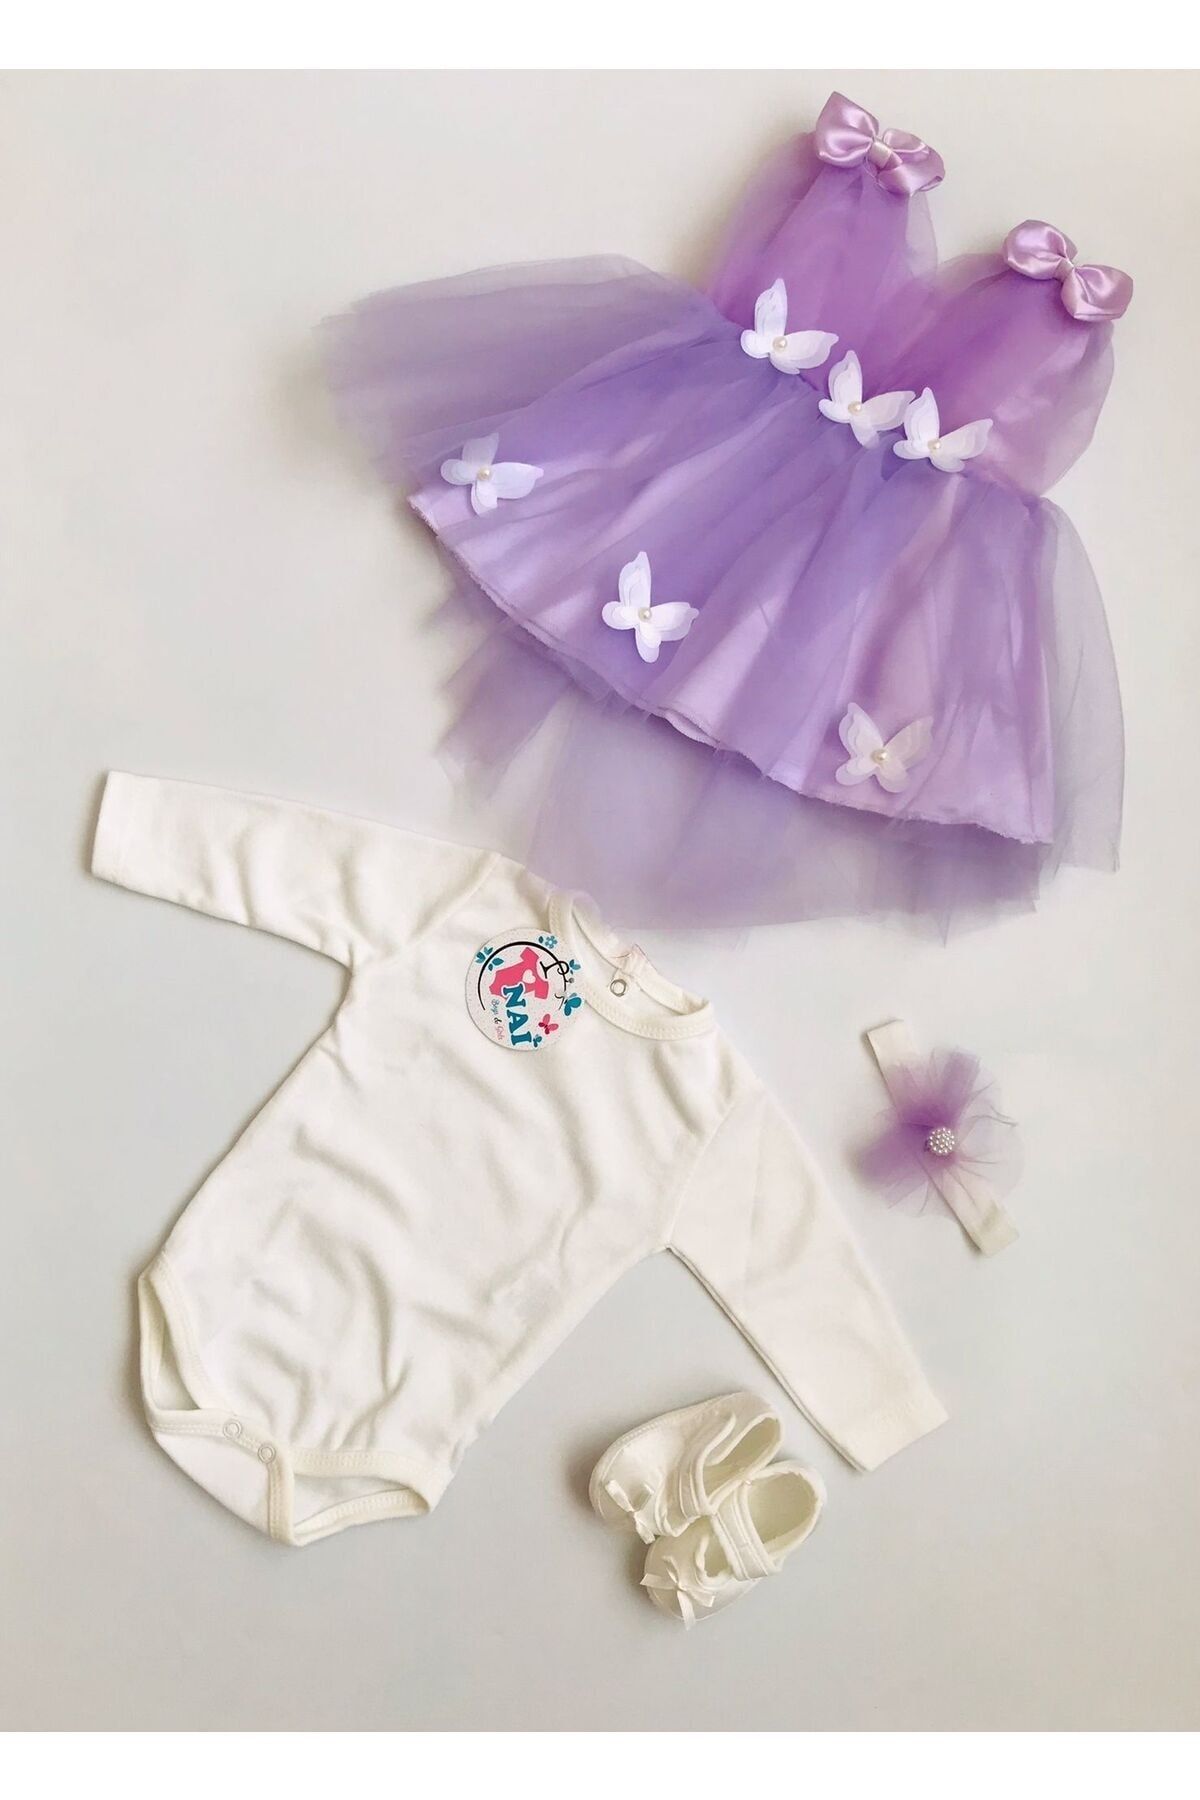 Nai baby Kelebek Detaylı Fiyonklu Kız Bebek Mevlüt Elbisesi 4 Parça Özel Gün Hediyelik Hastane Çıkışı